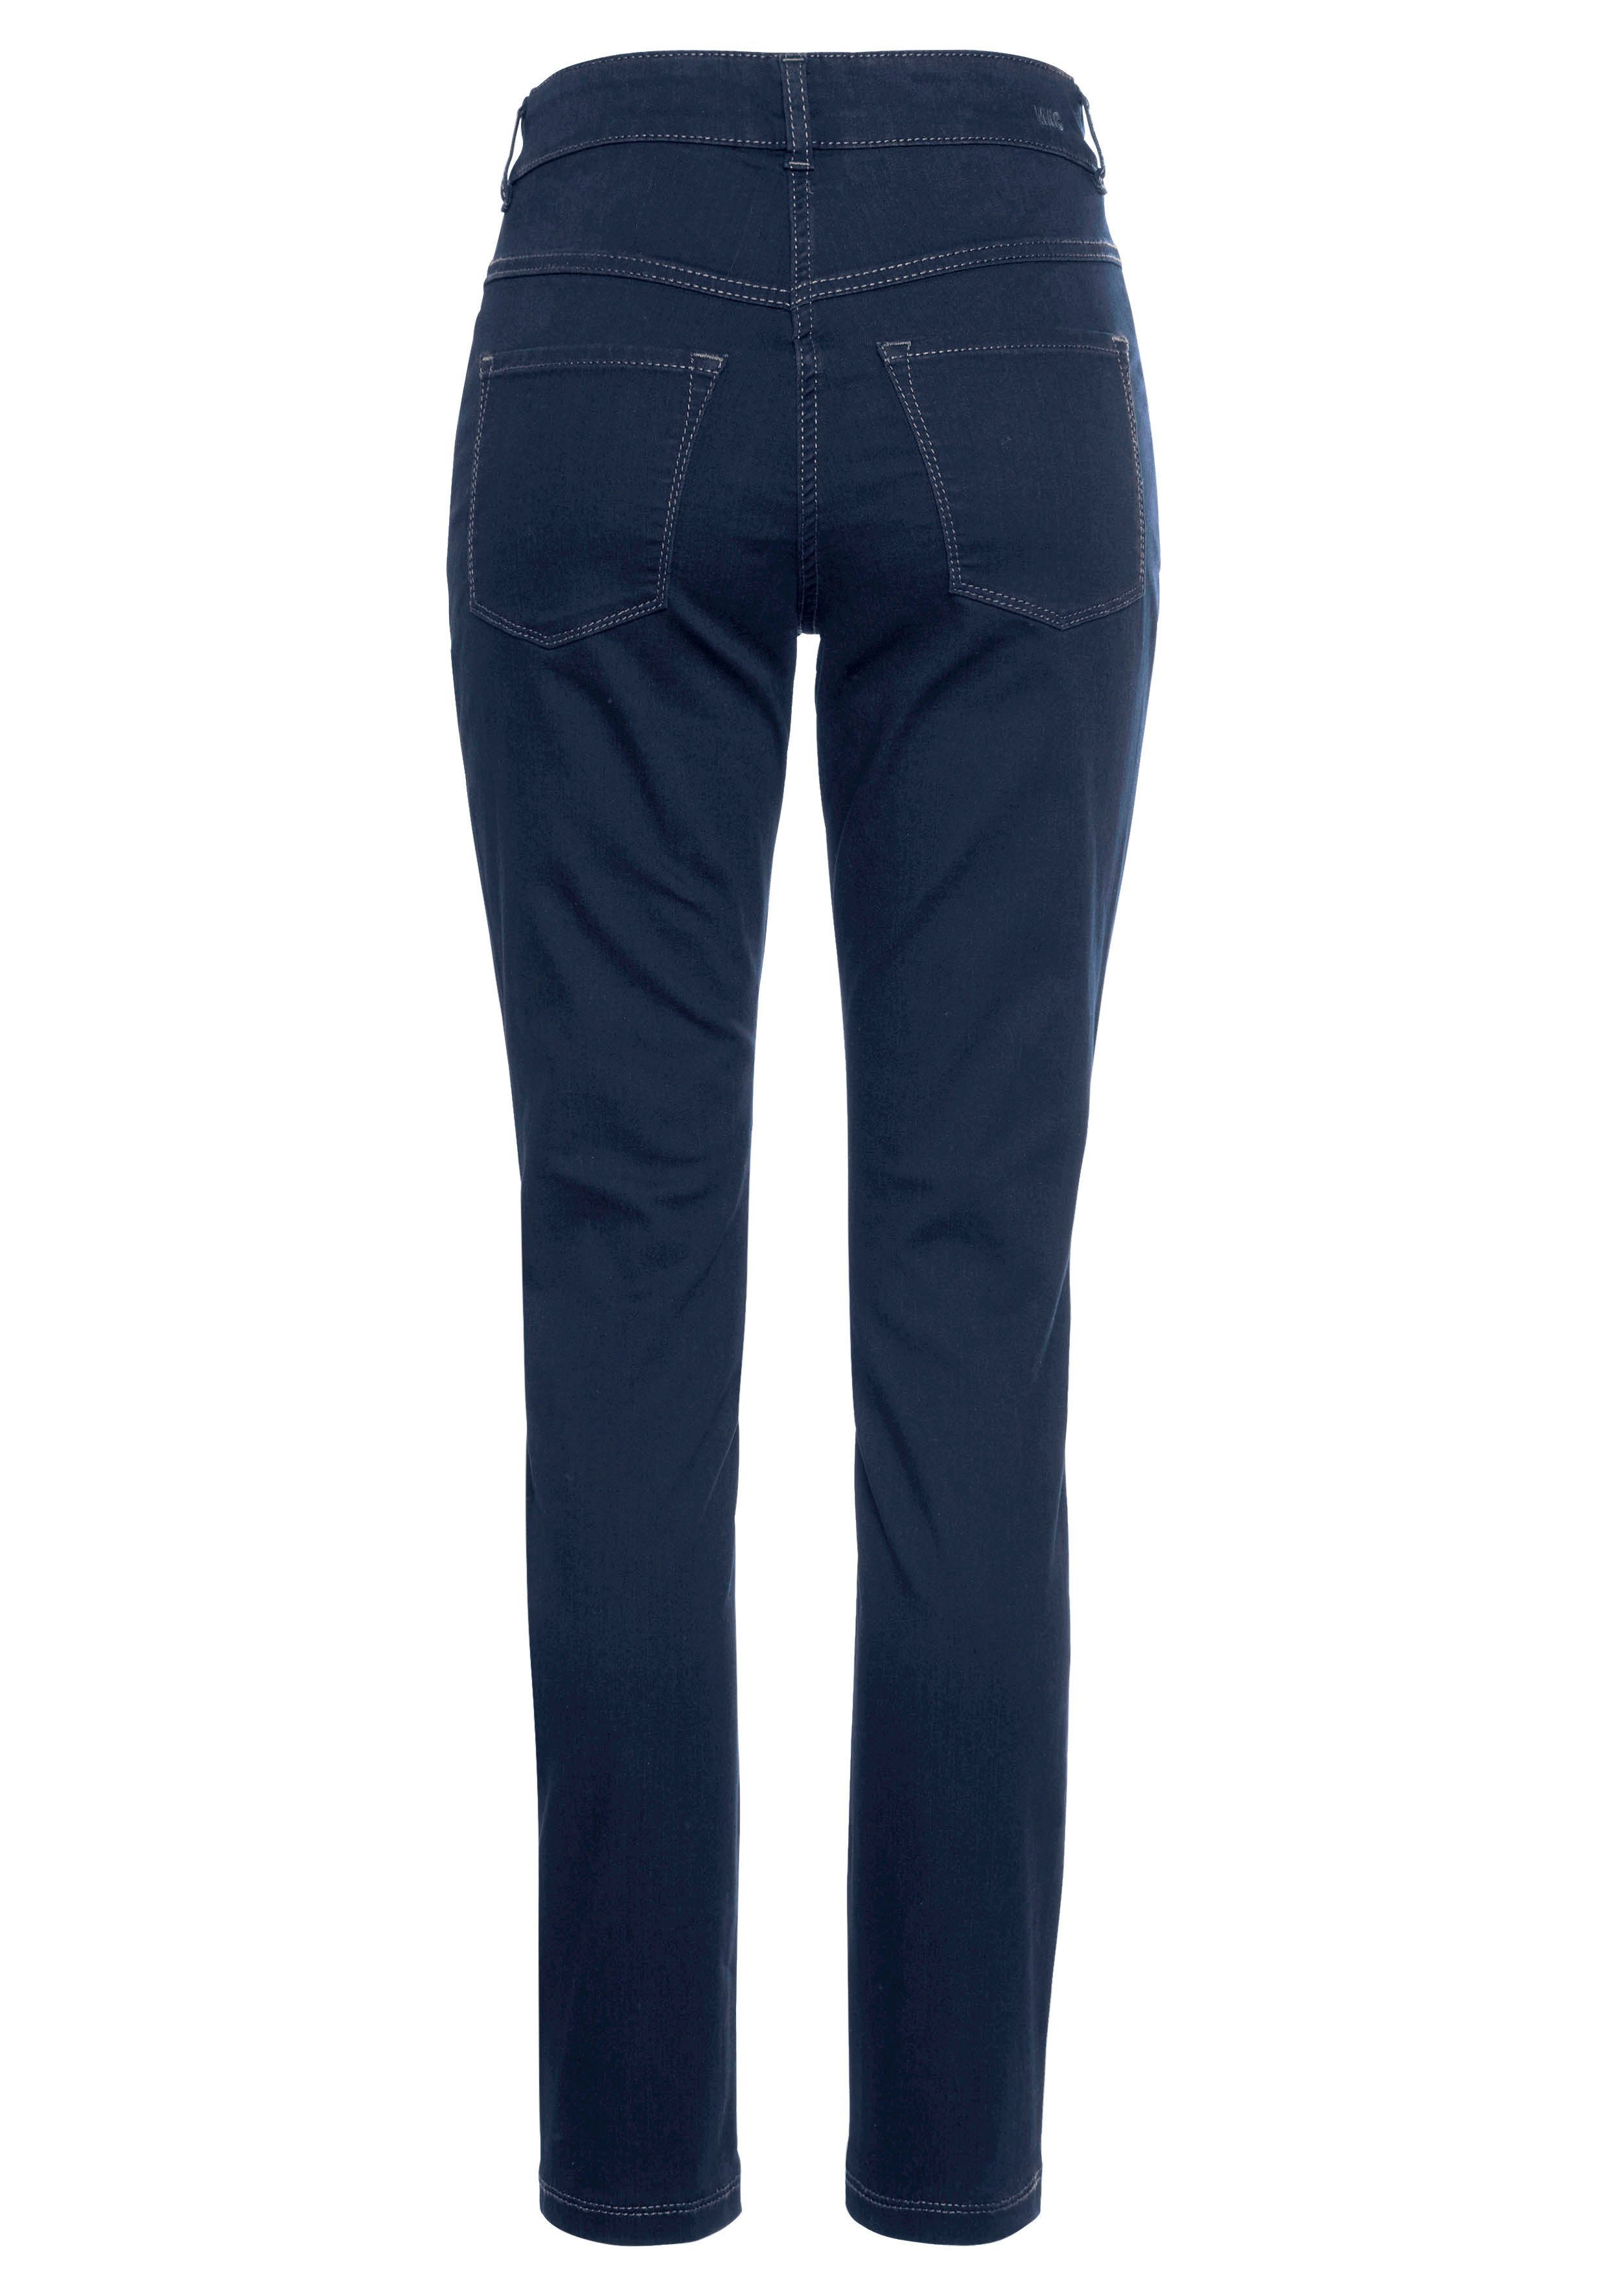 basic wash dark bequem Skinny-fit-Jeans blue Hiperstretch-Skinny ganzen new Qualität Power-Stretch Tag sitzt den MAC